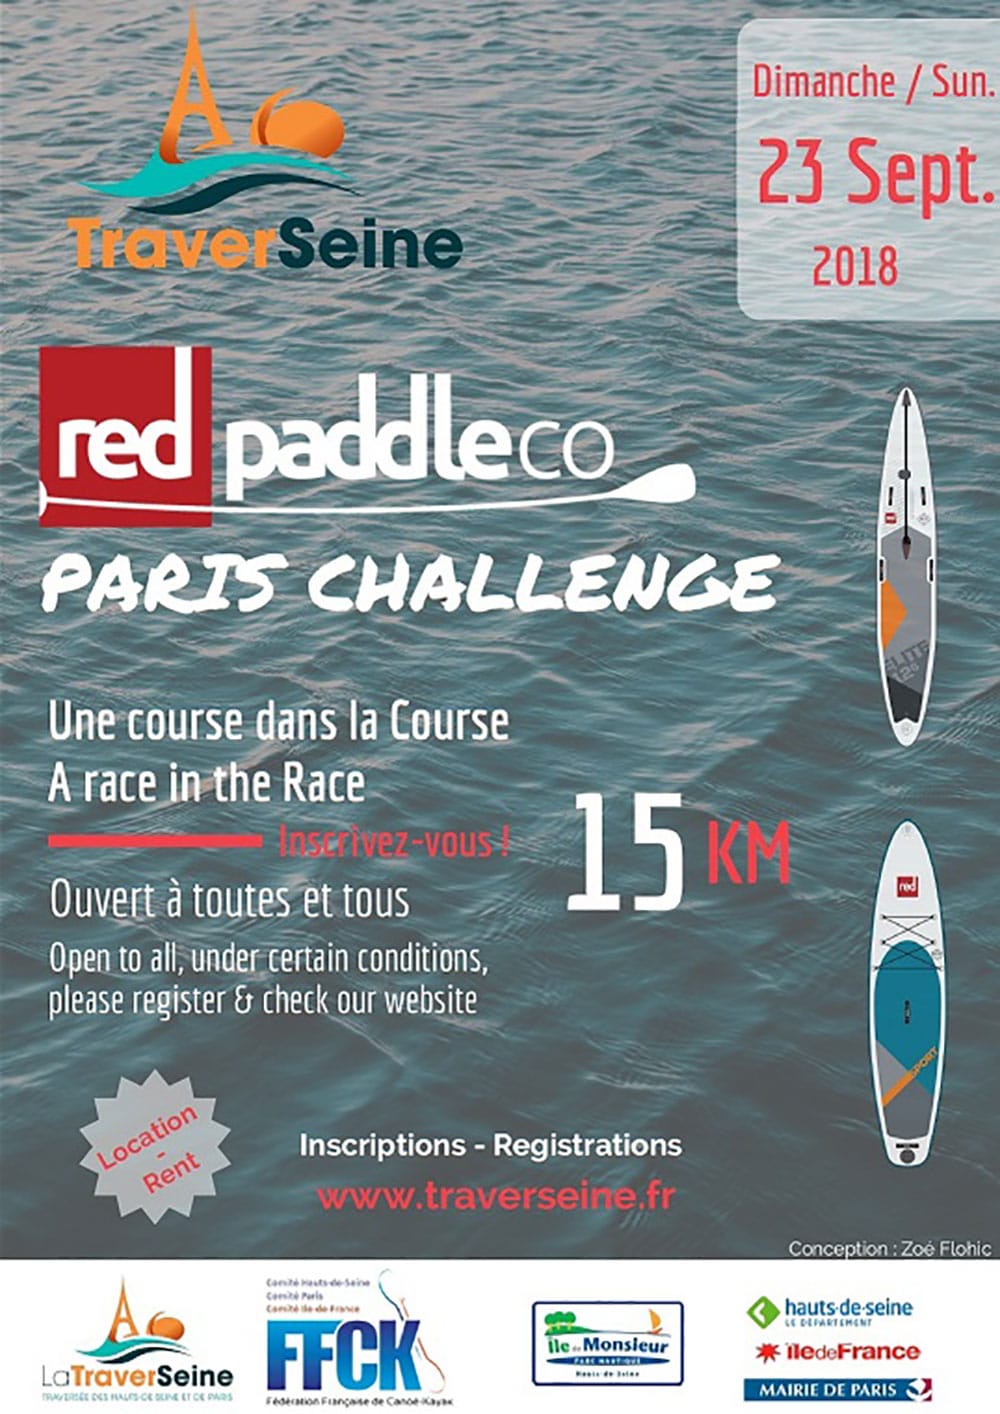 La traversée de Paris en stand up paddle avec Traverseine